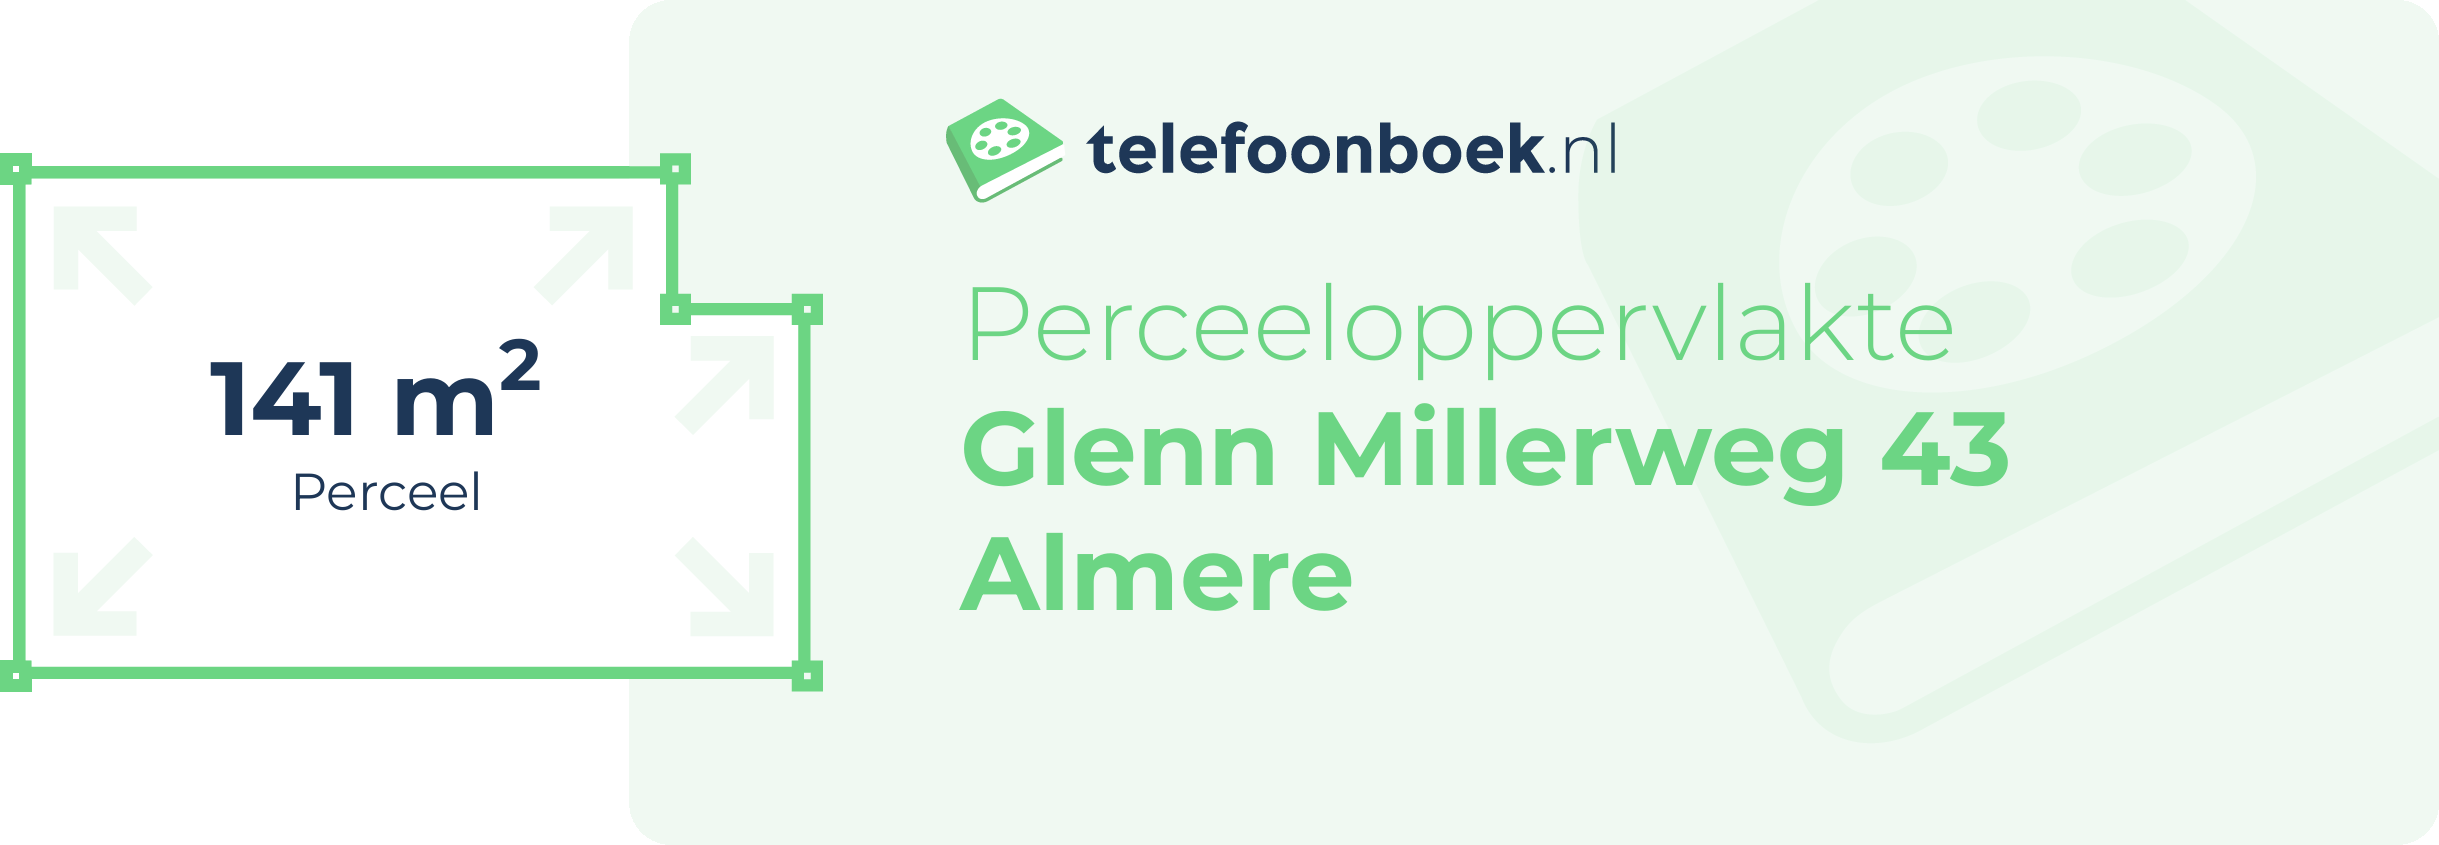 Perceeloppervlakte Glenn Millerweg 43 Almere